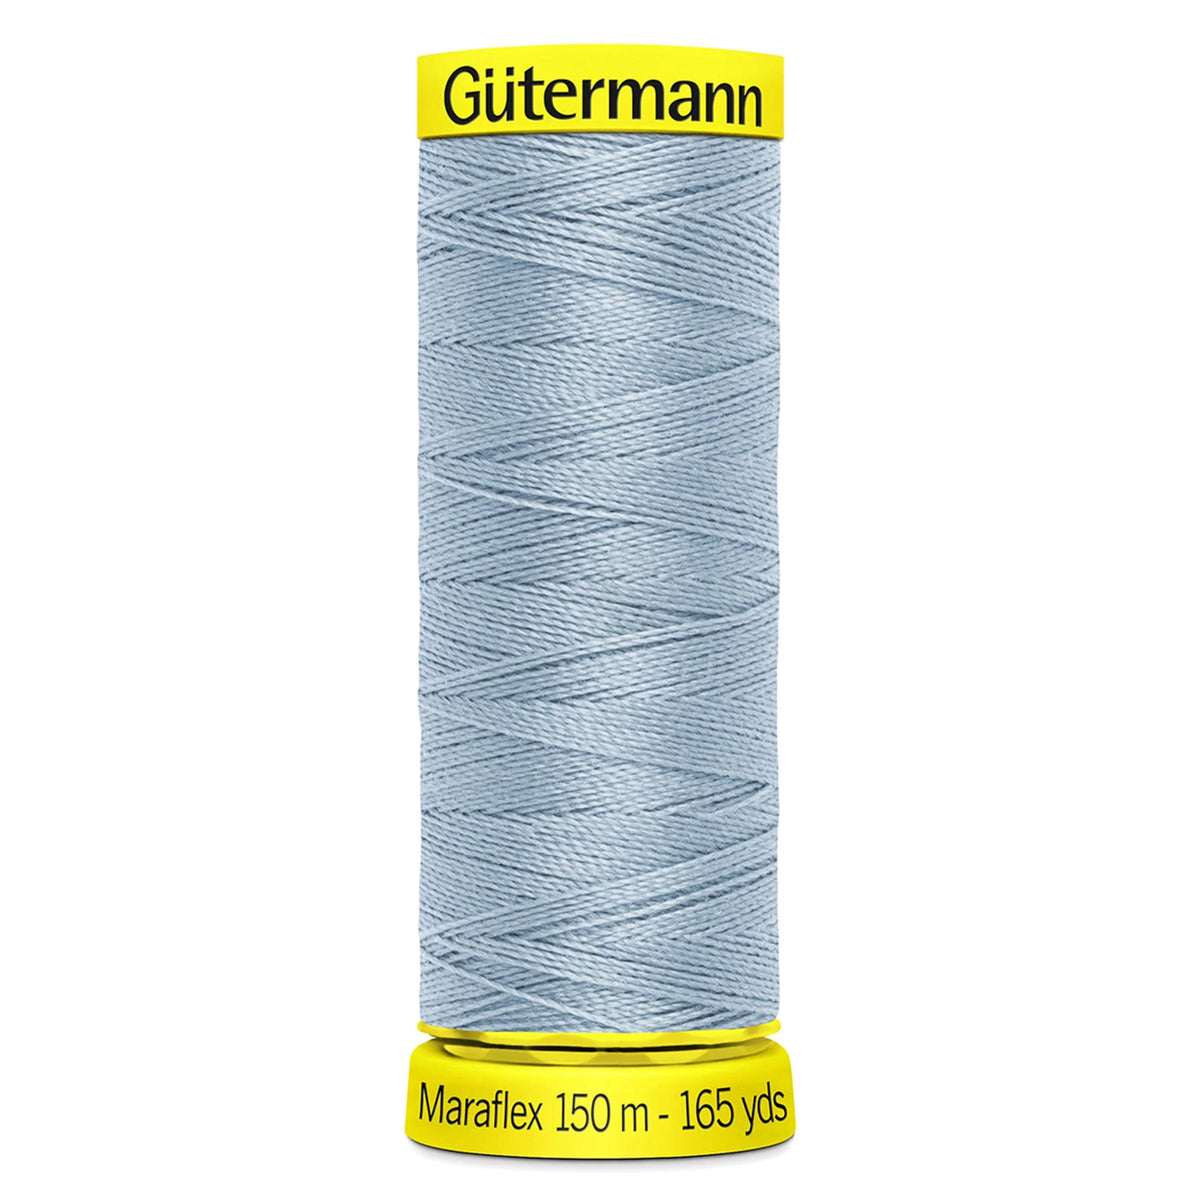 Gutermann Maraflex Elastic Stretch Thread 150m - Pound Fabrics